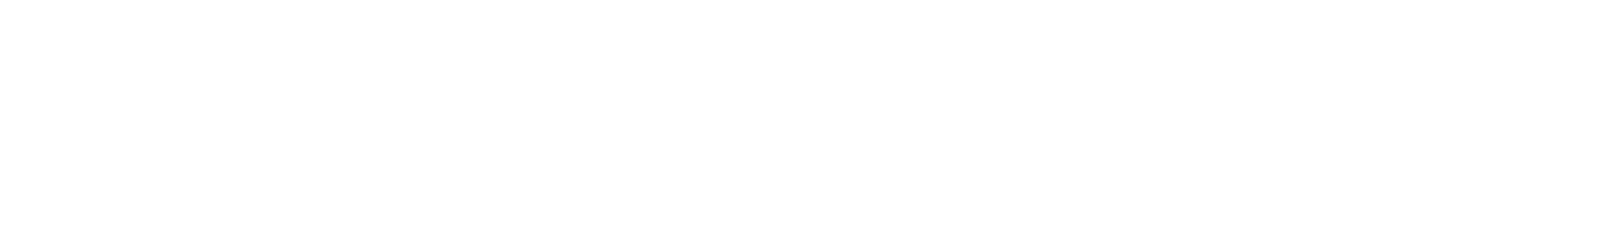 Semtech logo large for dark backgrounds (transparent PNG)